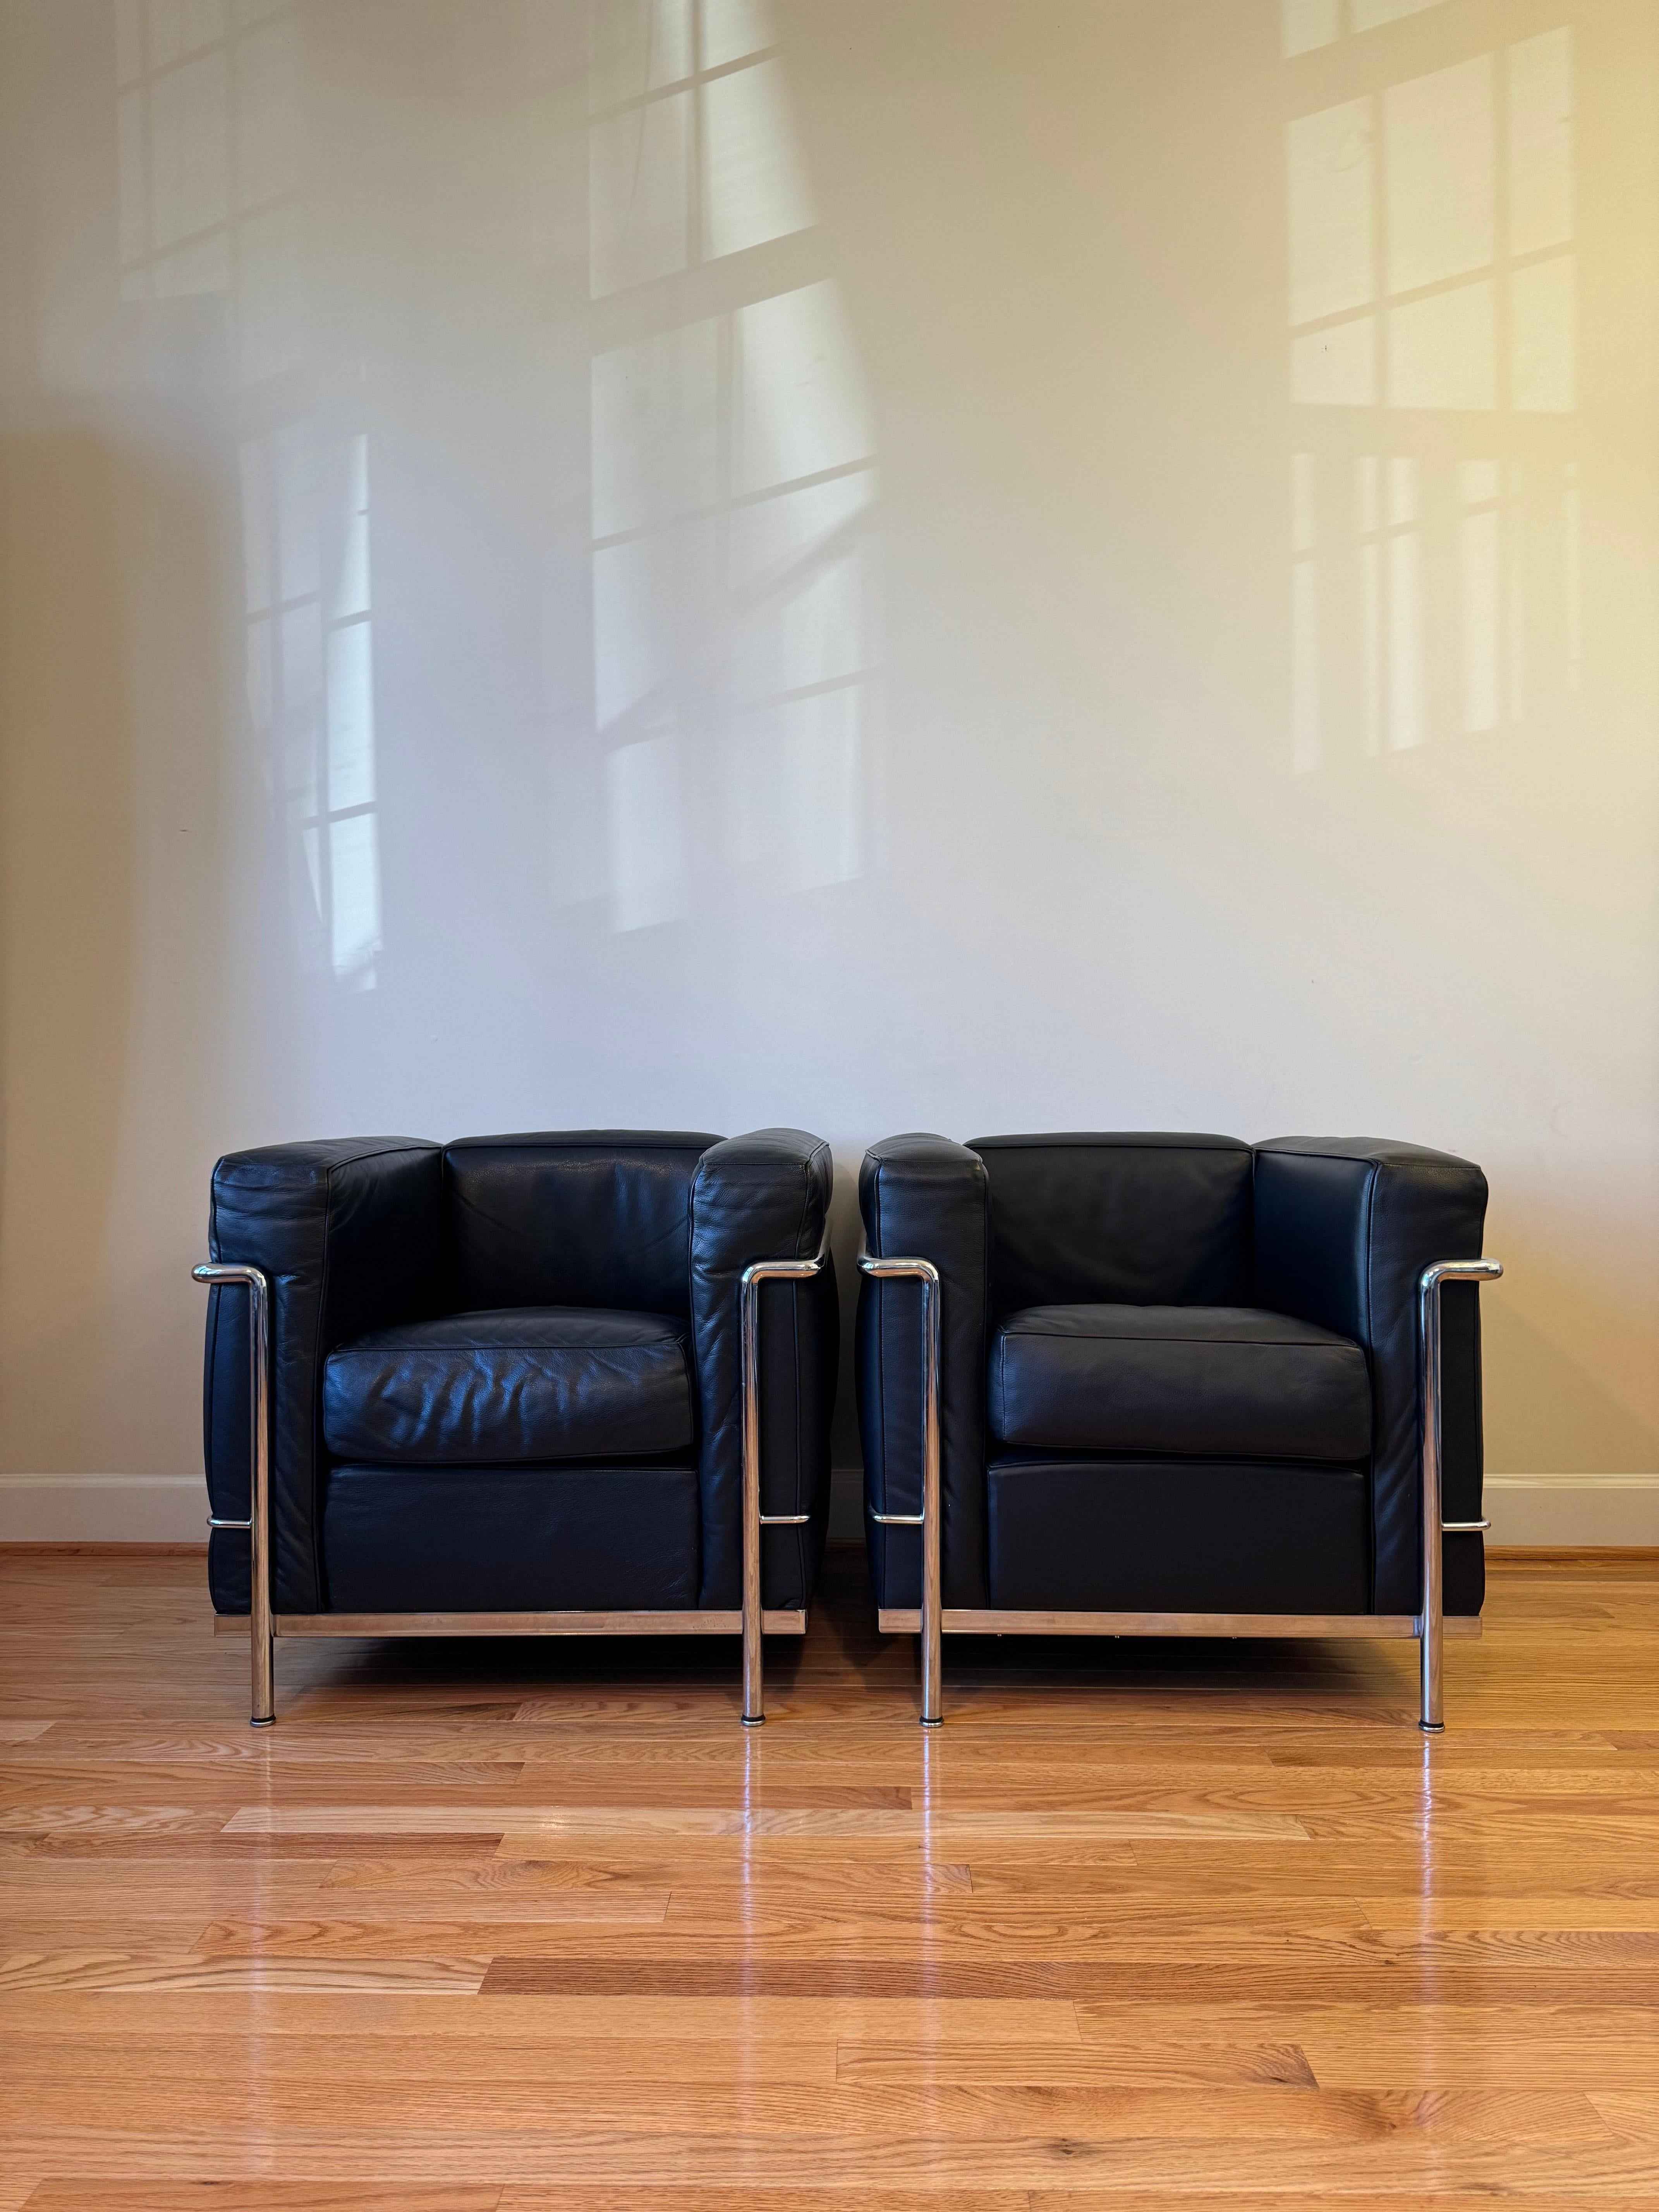 La Collection LC2 (1928) inverse la structure standard des canapés et des chaises. Les cadres extérieurs en acier accueillent des coussins épais et résistants, intégrant le confort du rembourrage à la fonctionnalité du style international. 

La